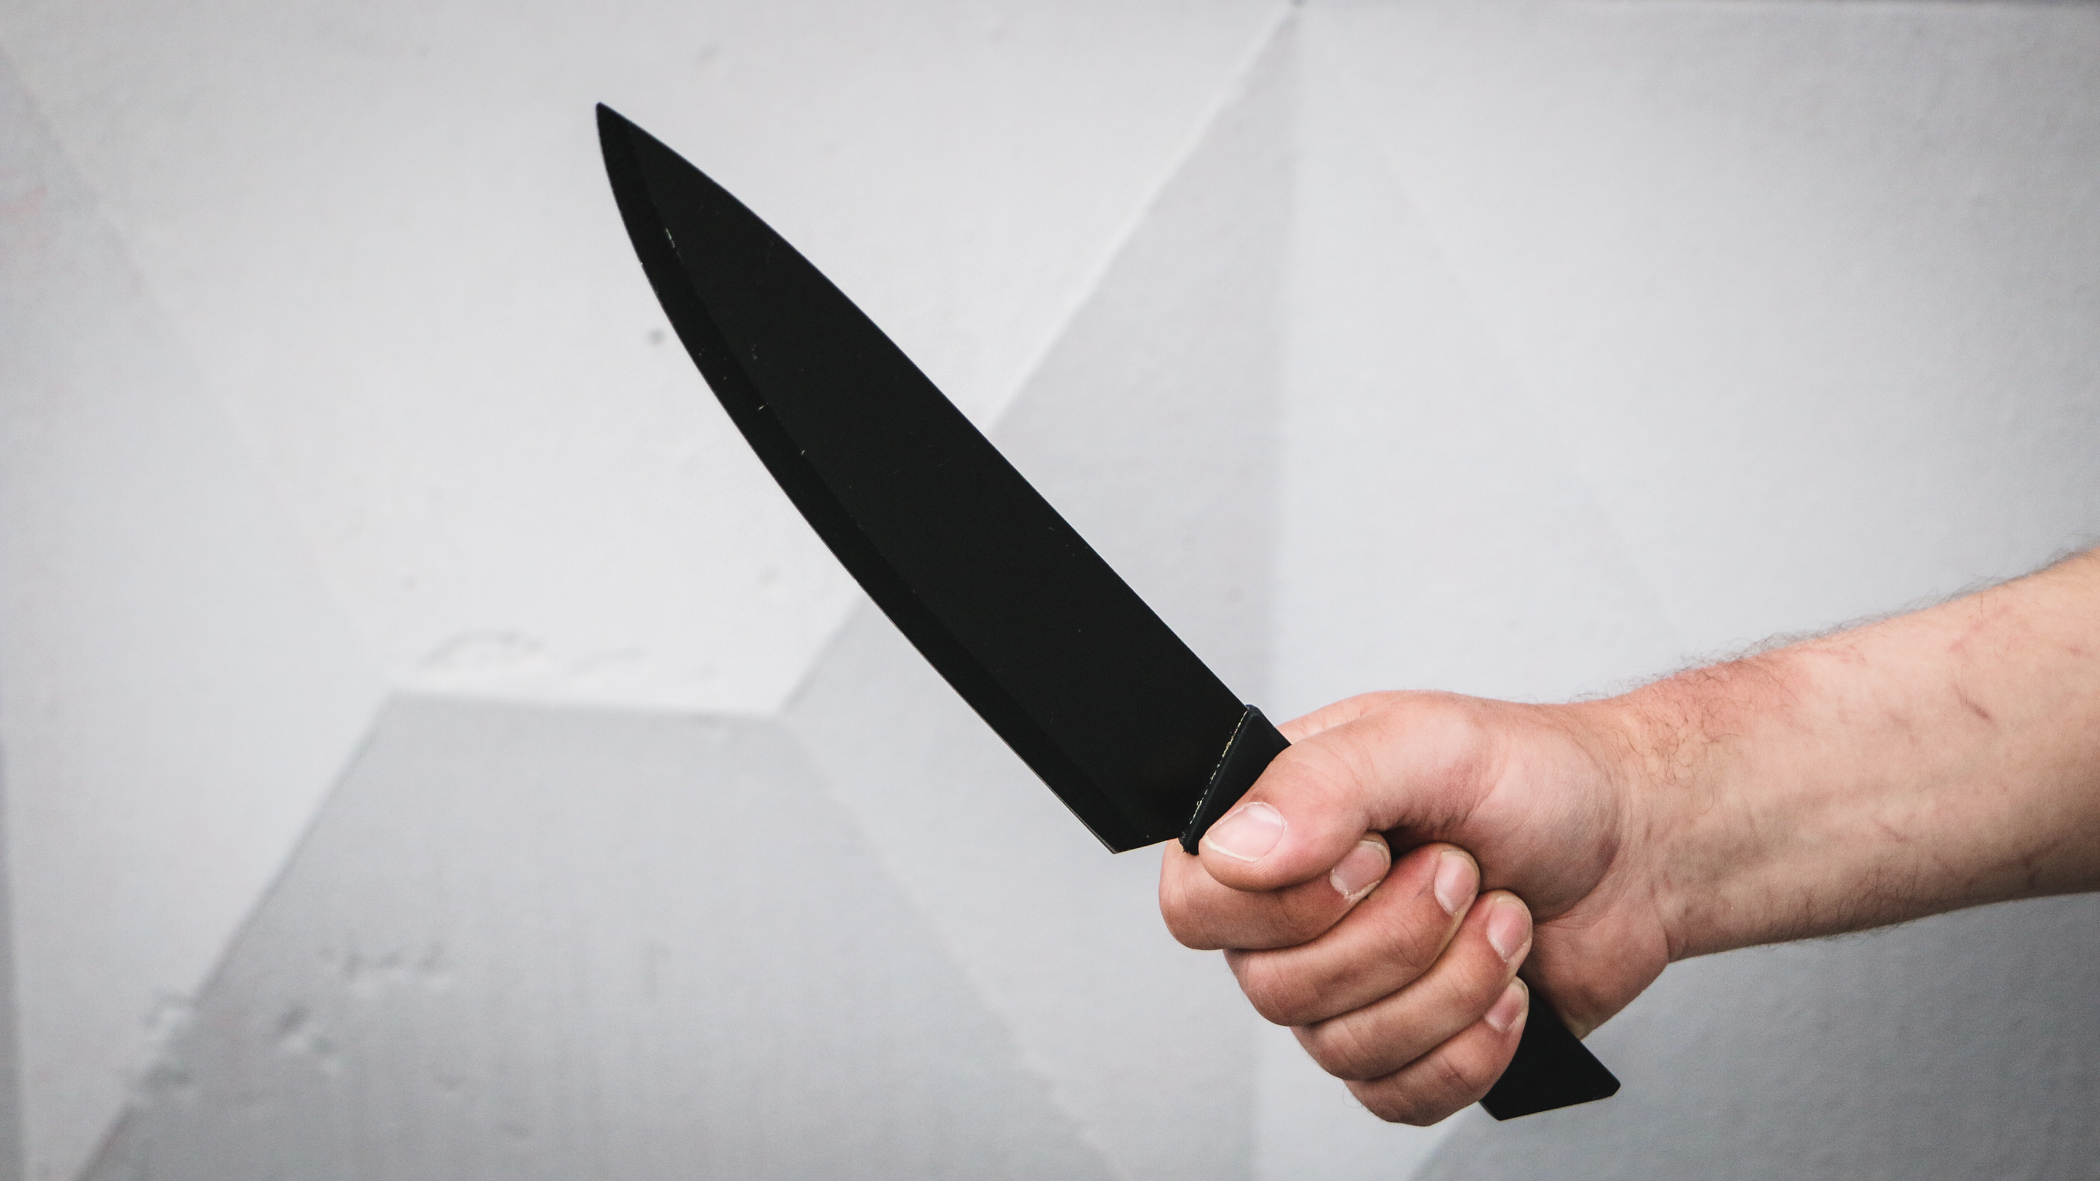 В Башкирии женщина ударила супруга ножом, возбуждено уголовное дело